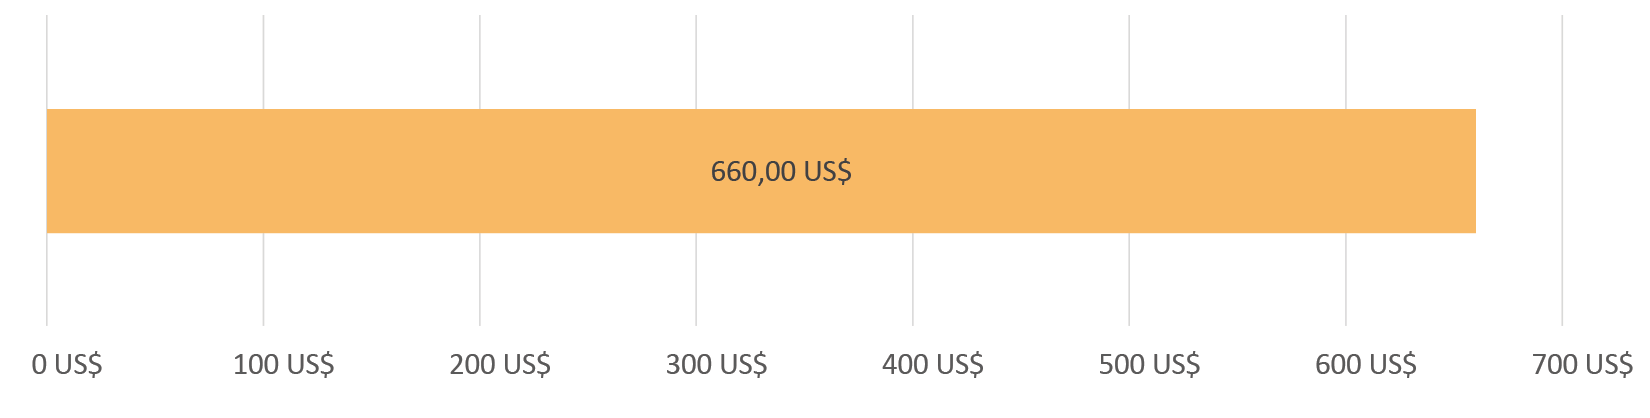 660,00 US$ dépensés; 0,00 US$ restants